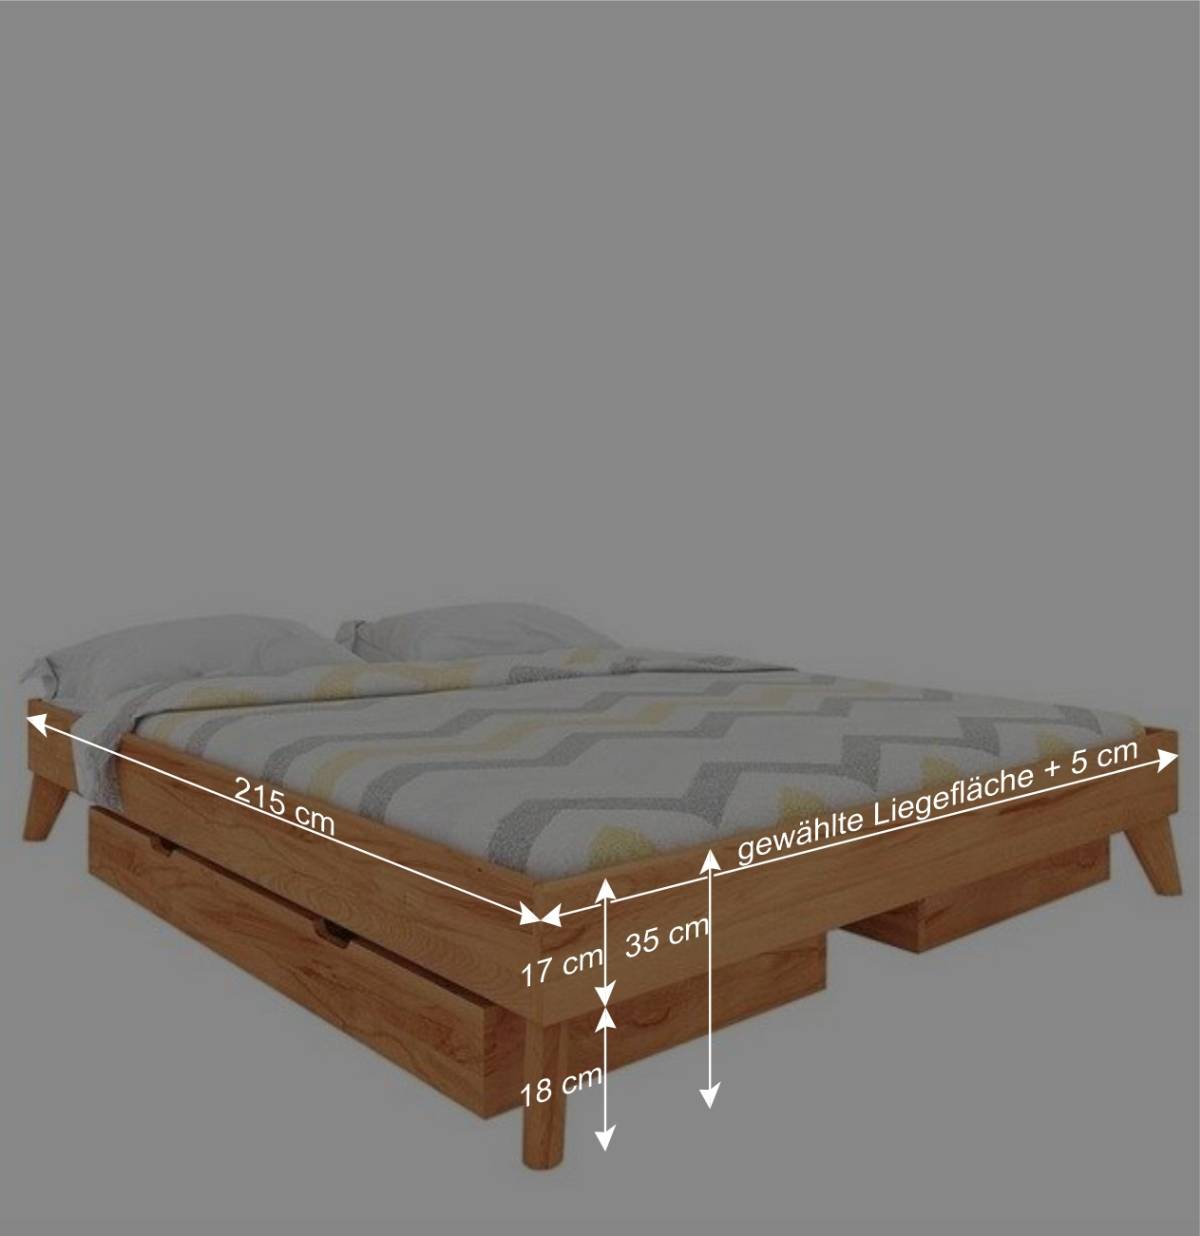 210cm langes Bett für Dachzimmer - Junola V